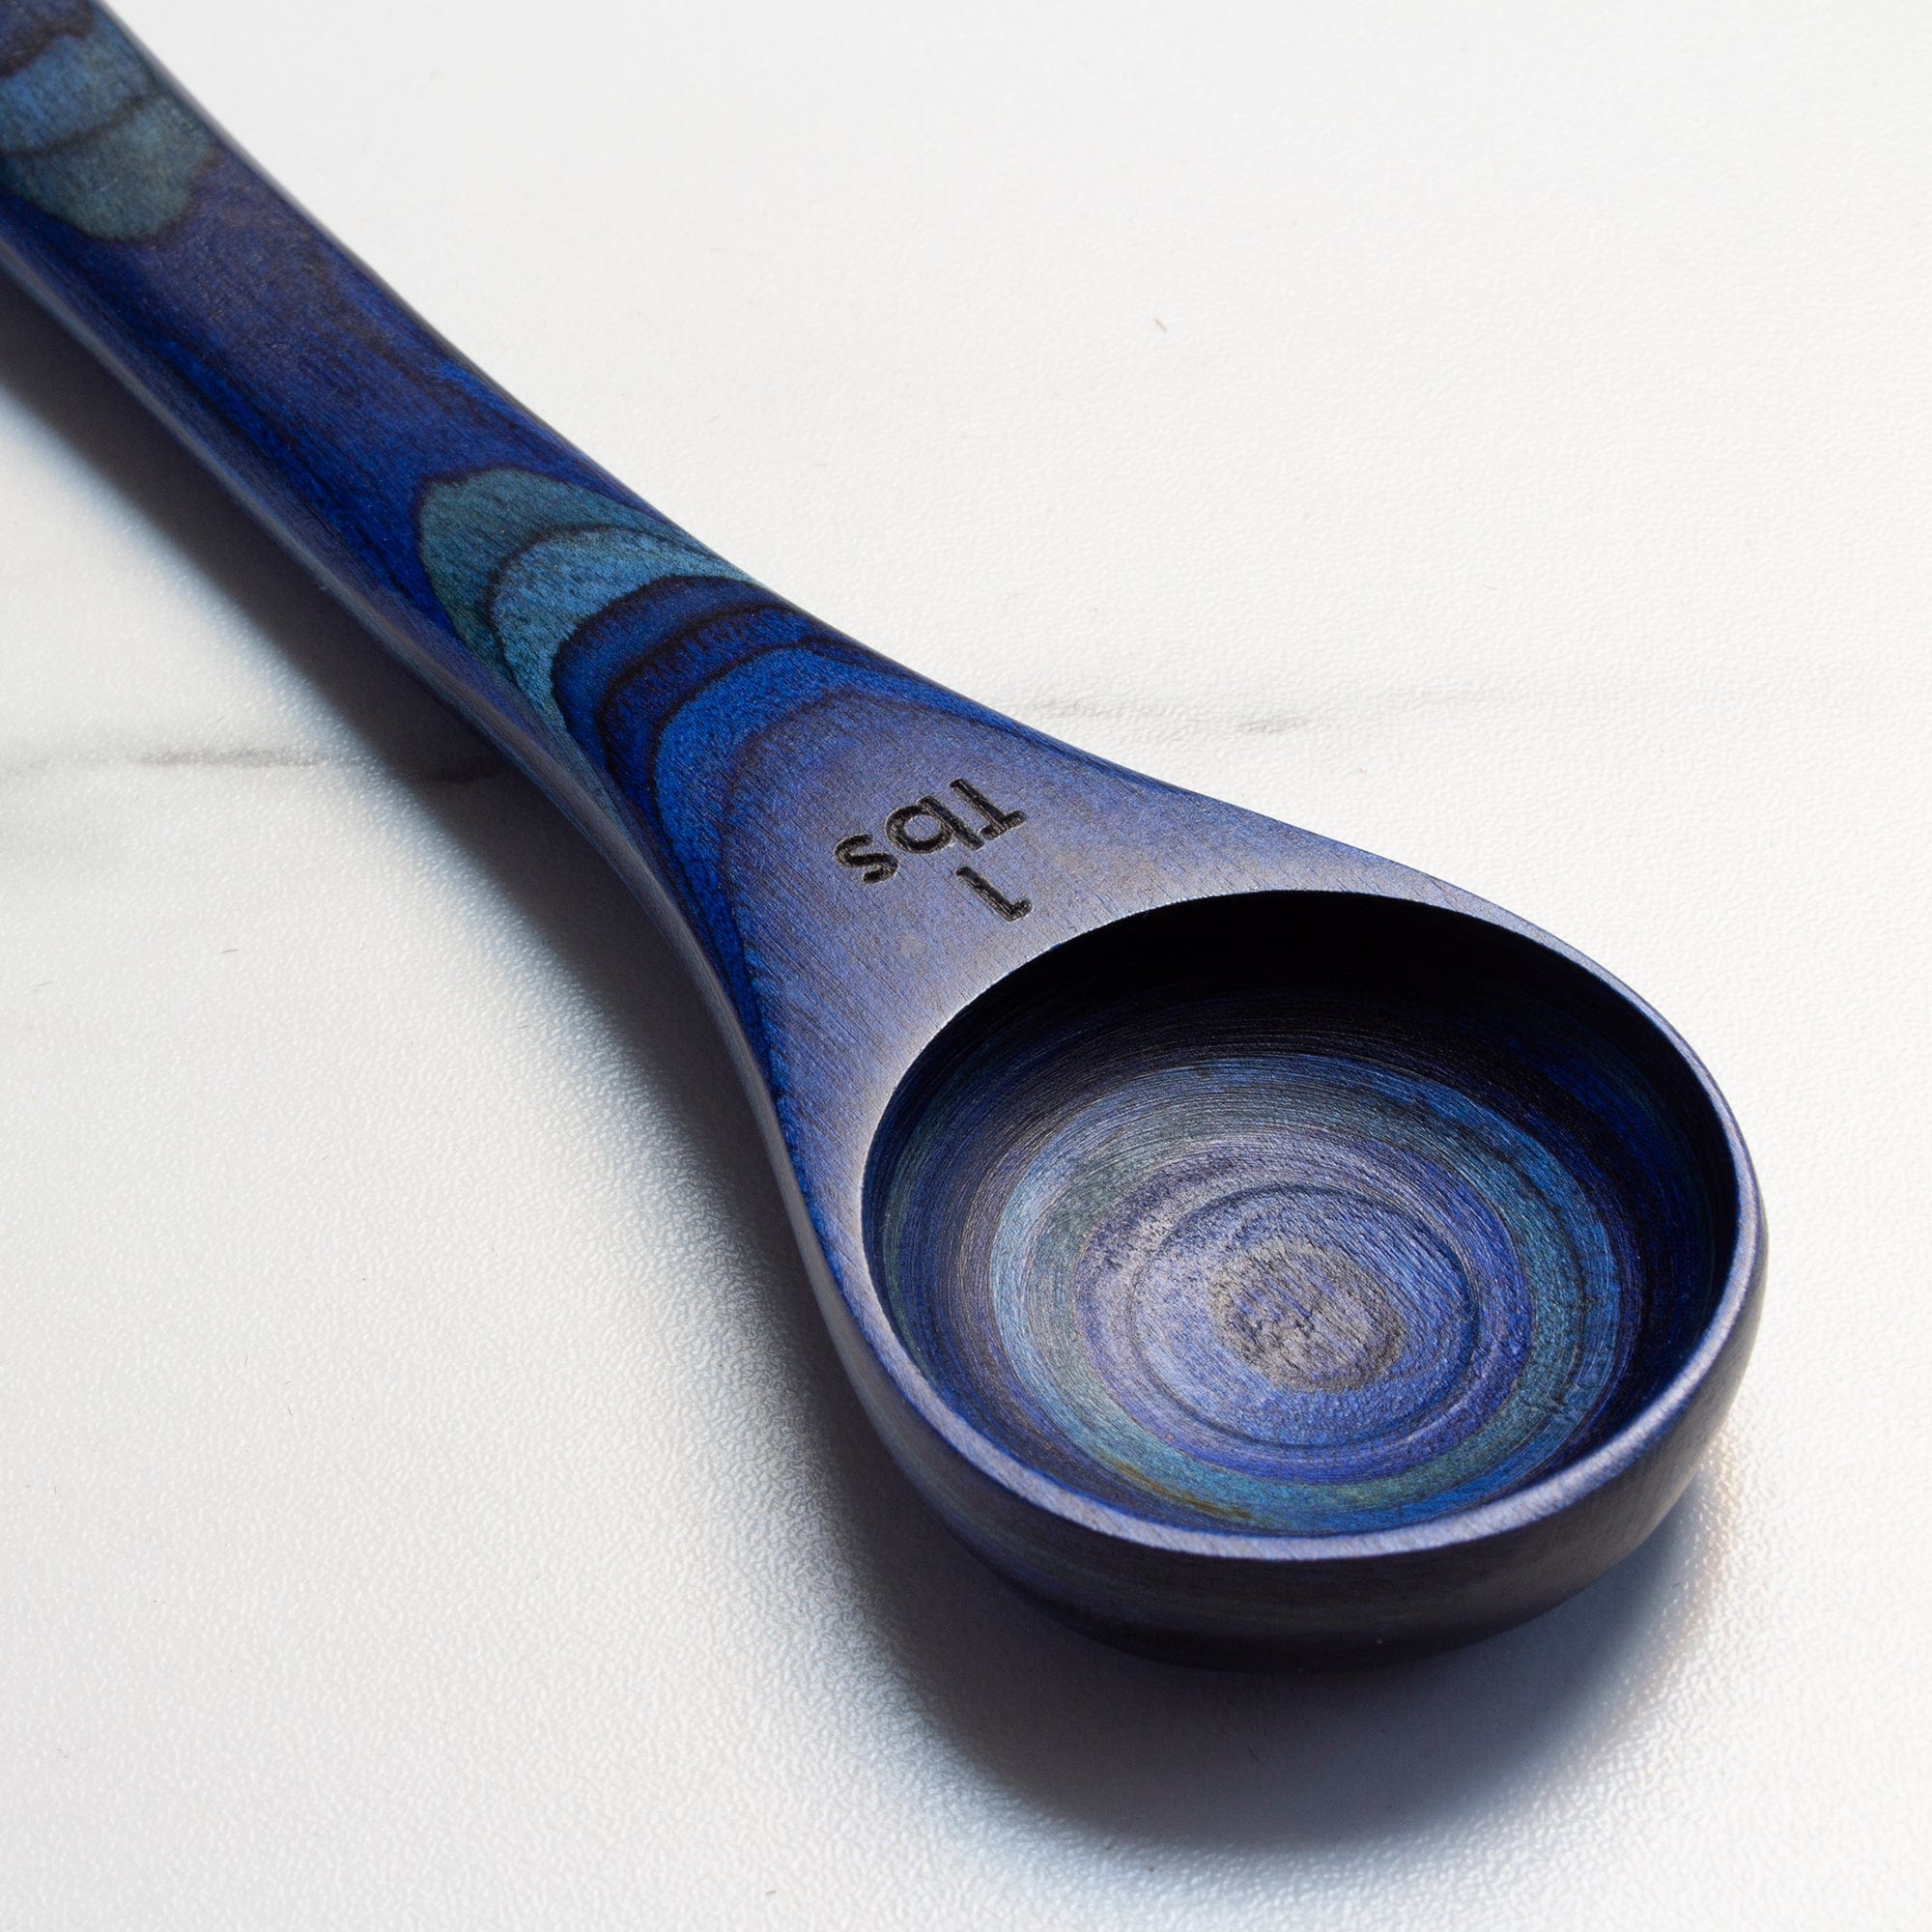 Baltique® Mumbai Collection 2-in-1 Measuring Spoon – Totally Bamboo